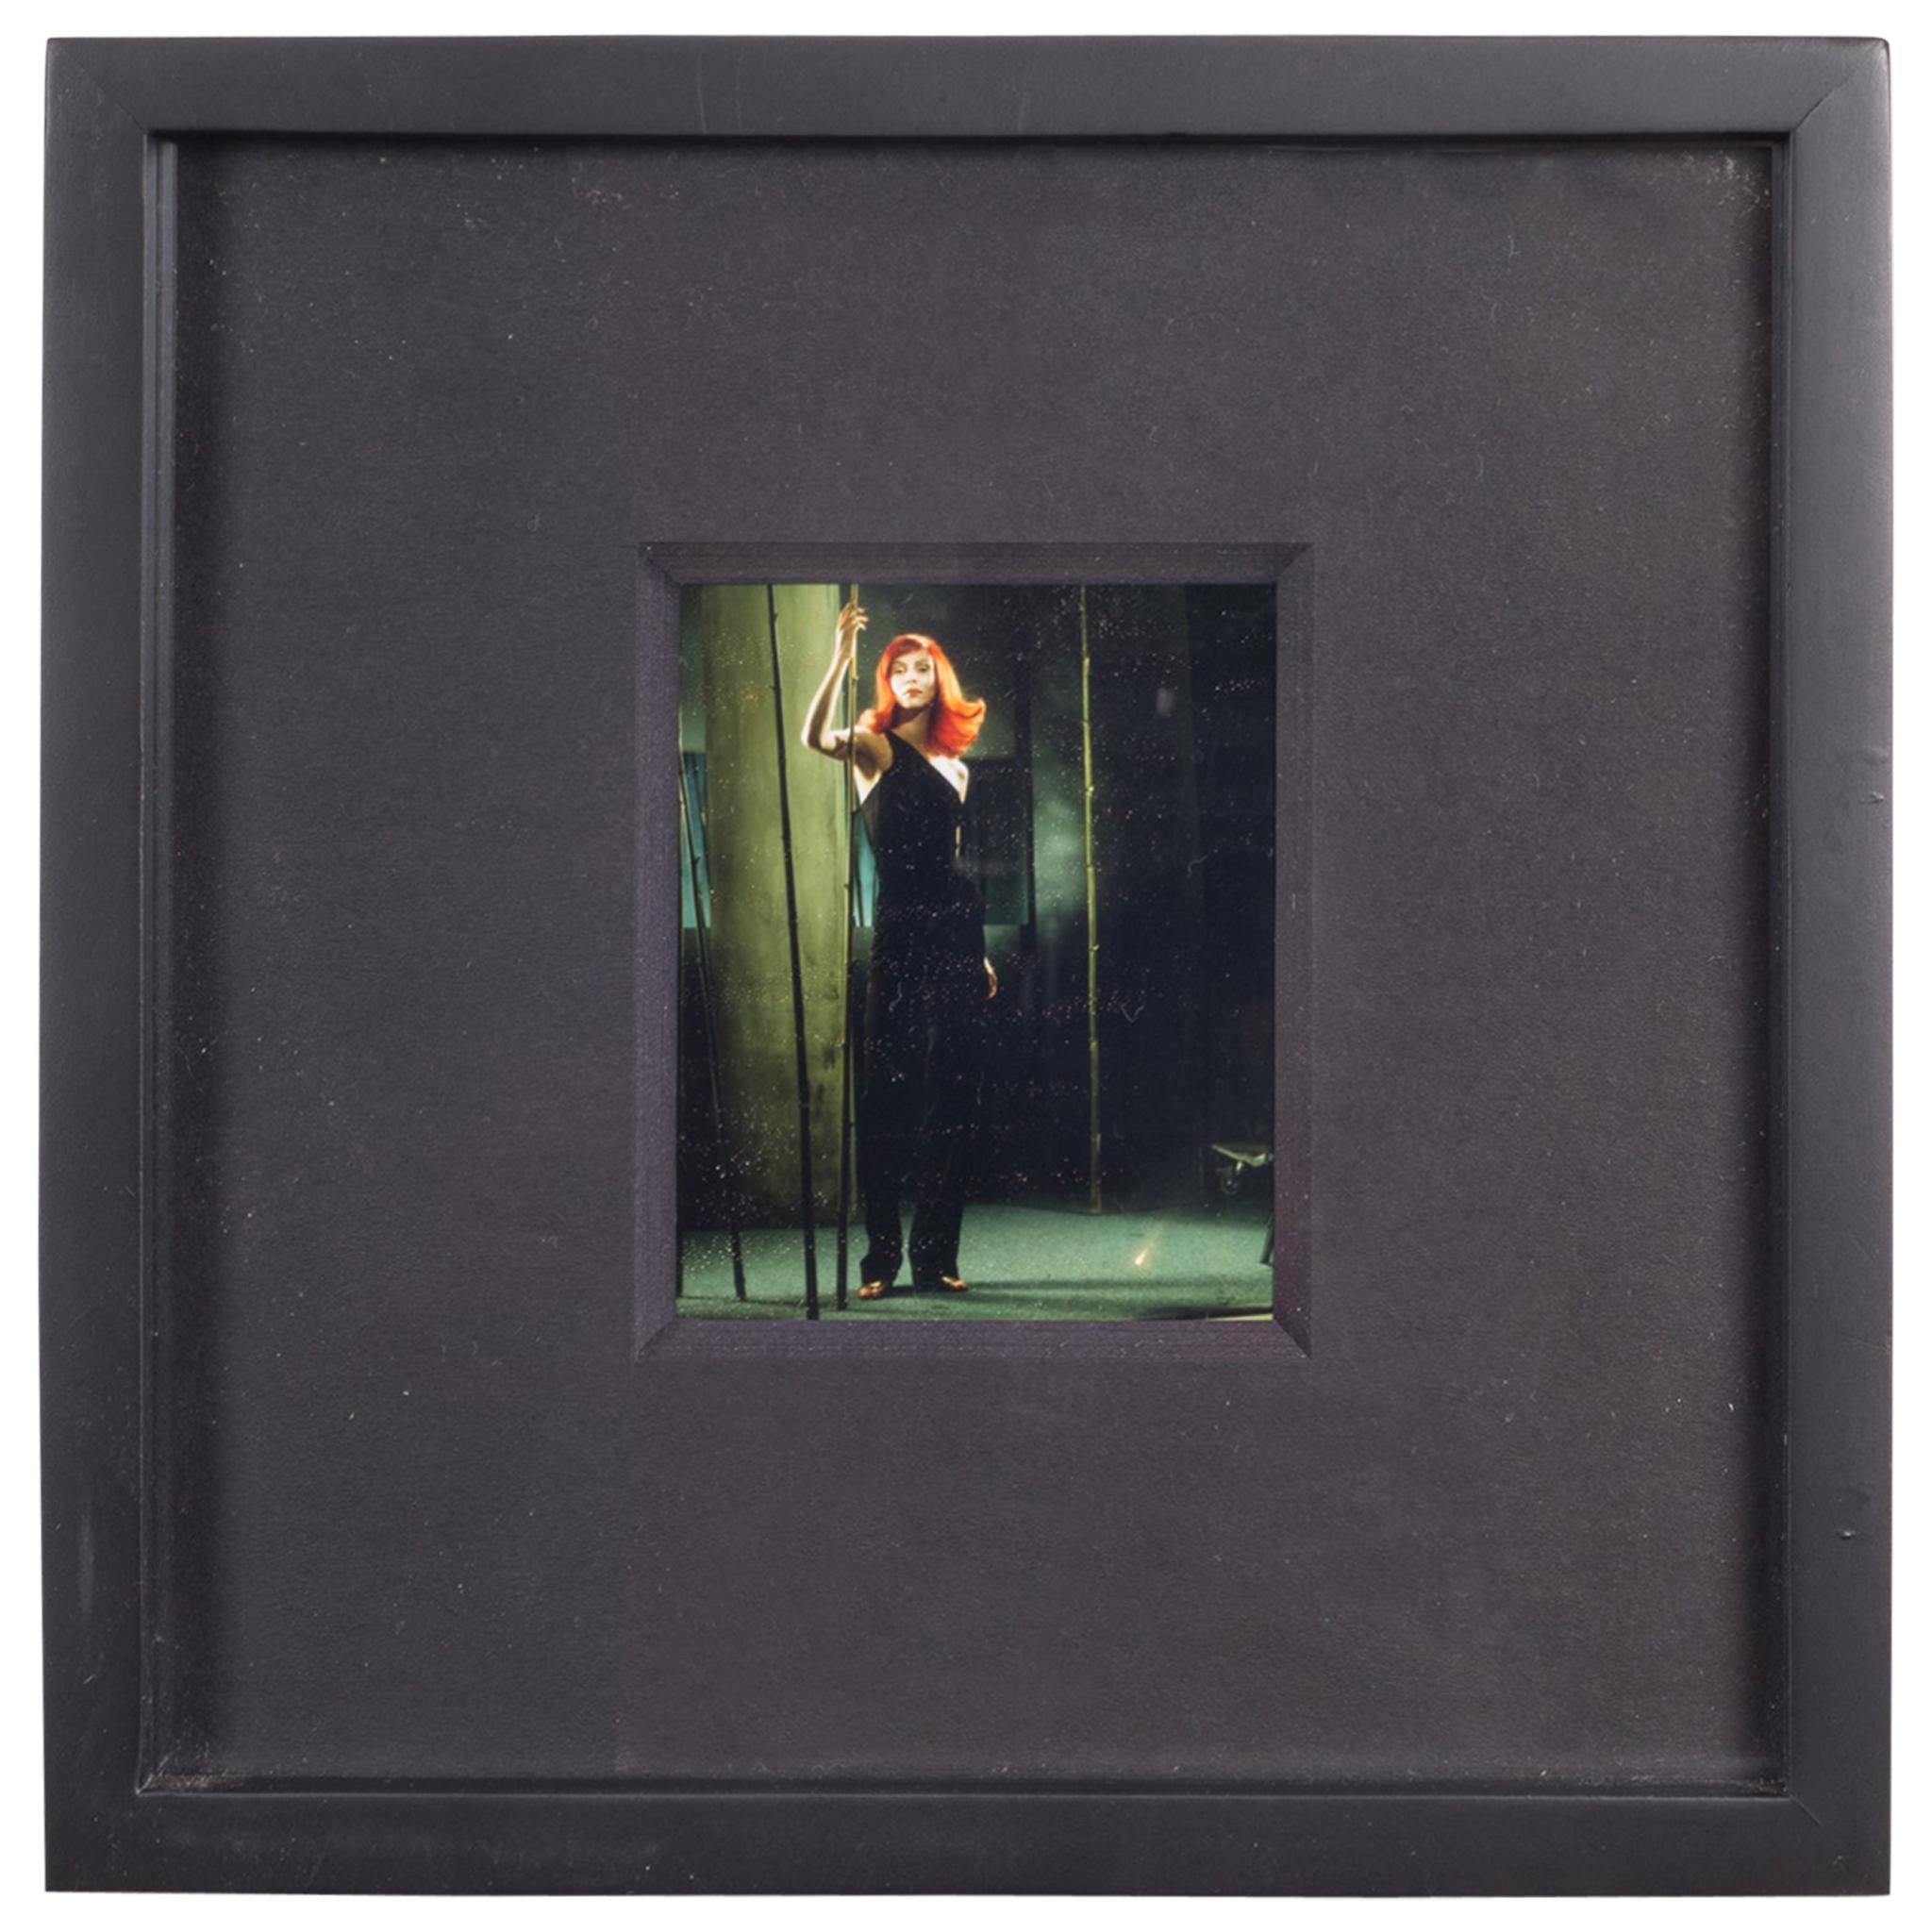 Polaroid Test Image #39 by Denise Tarantino for Dah Len Studios